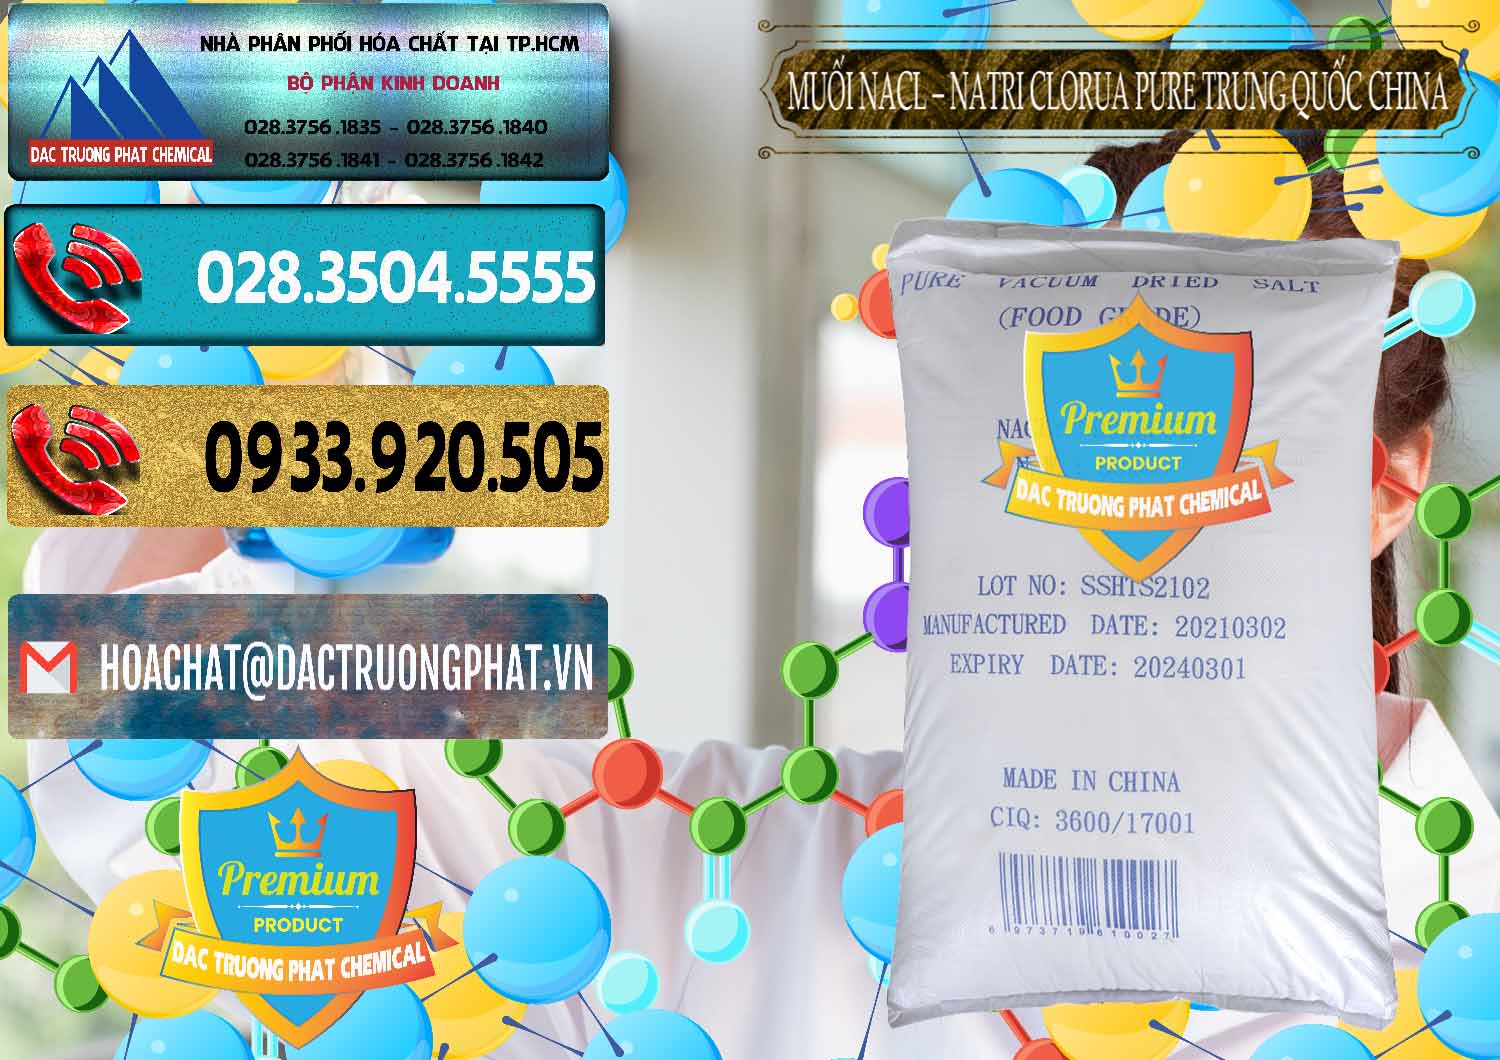 Nơi chuyên nhập khẩu và bán Muối NaCL – Sodium Chloride Pure Trung Quốc China - 0230 - Nhà nhập khẩu và cung cấp hóa chất tại TP.HCM - hoachatdetnhuom.com